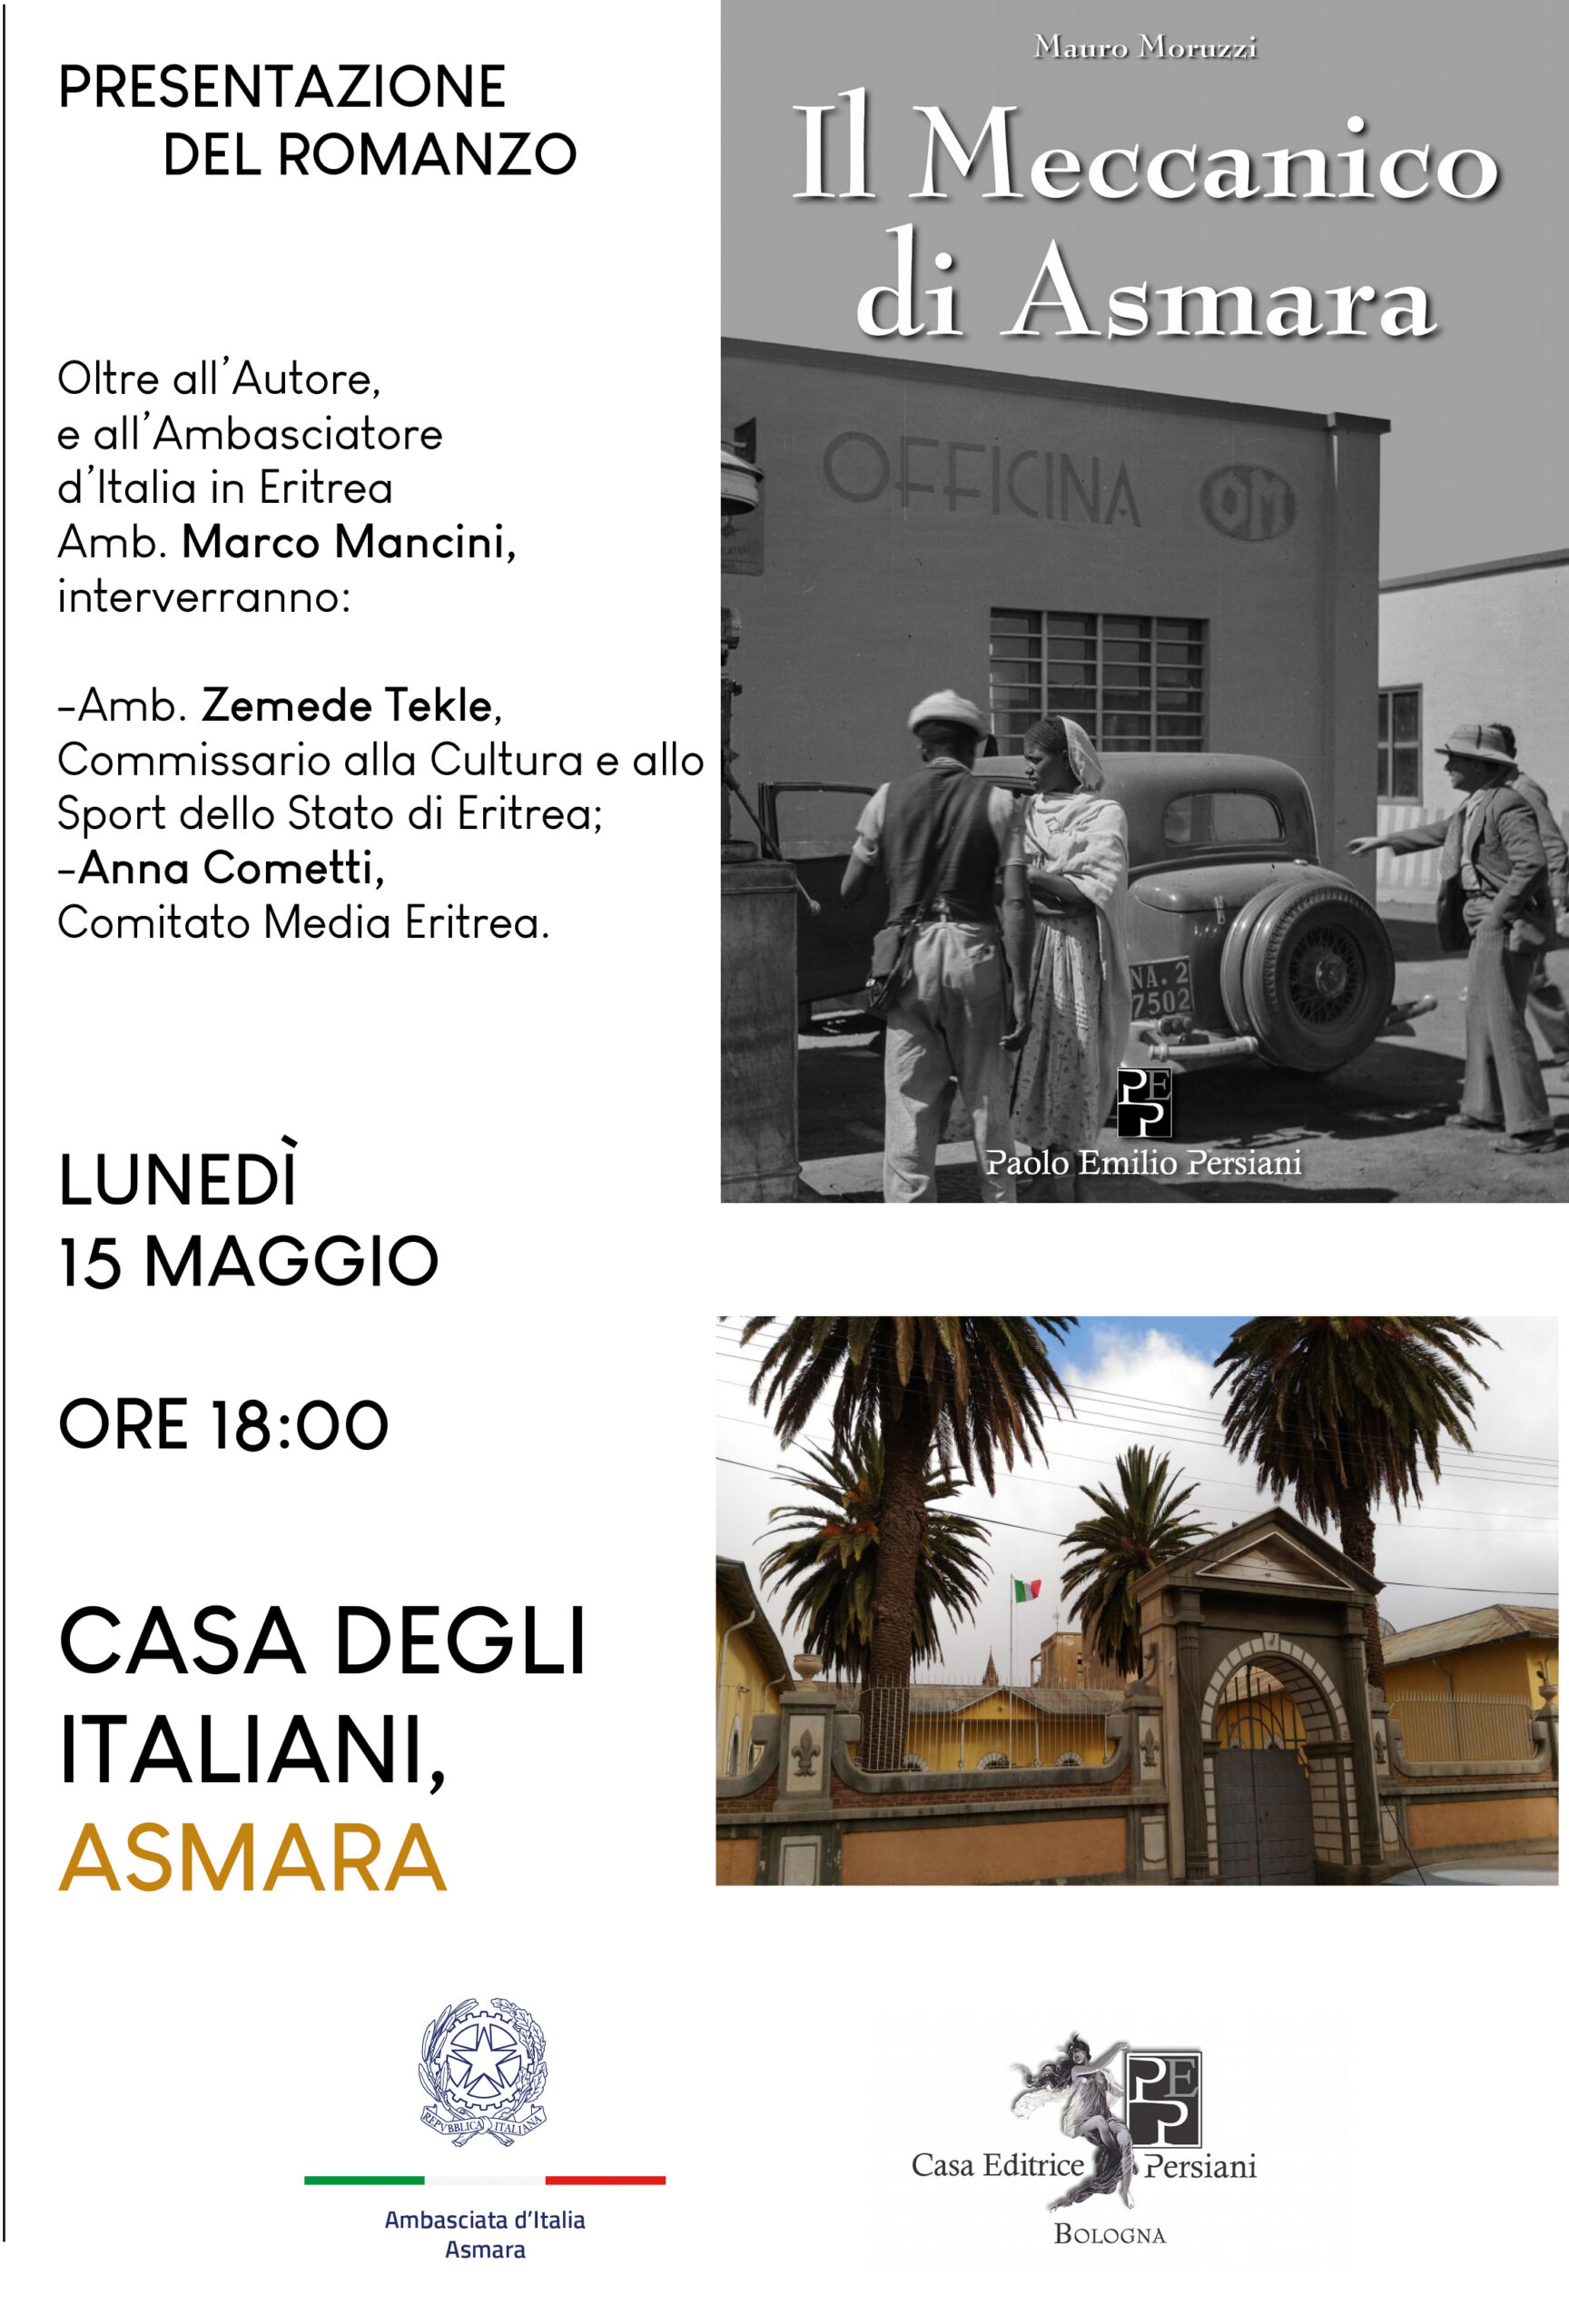 Alla Casa degli Italiani di Asmara la presentazione de “Il Meccanico di Asmara”